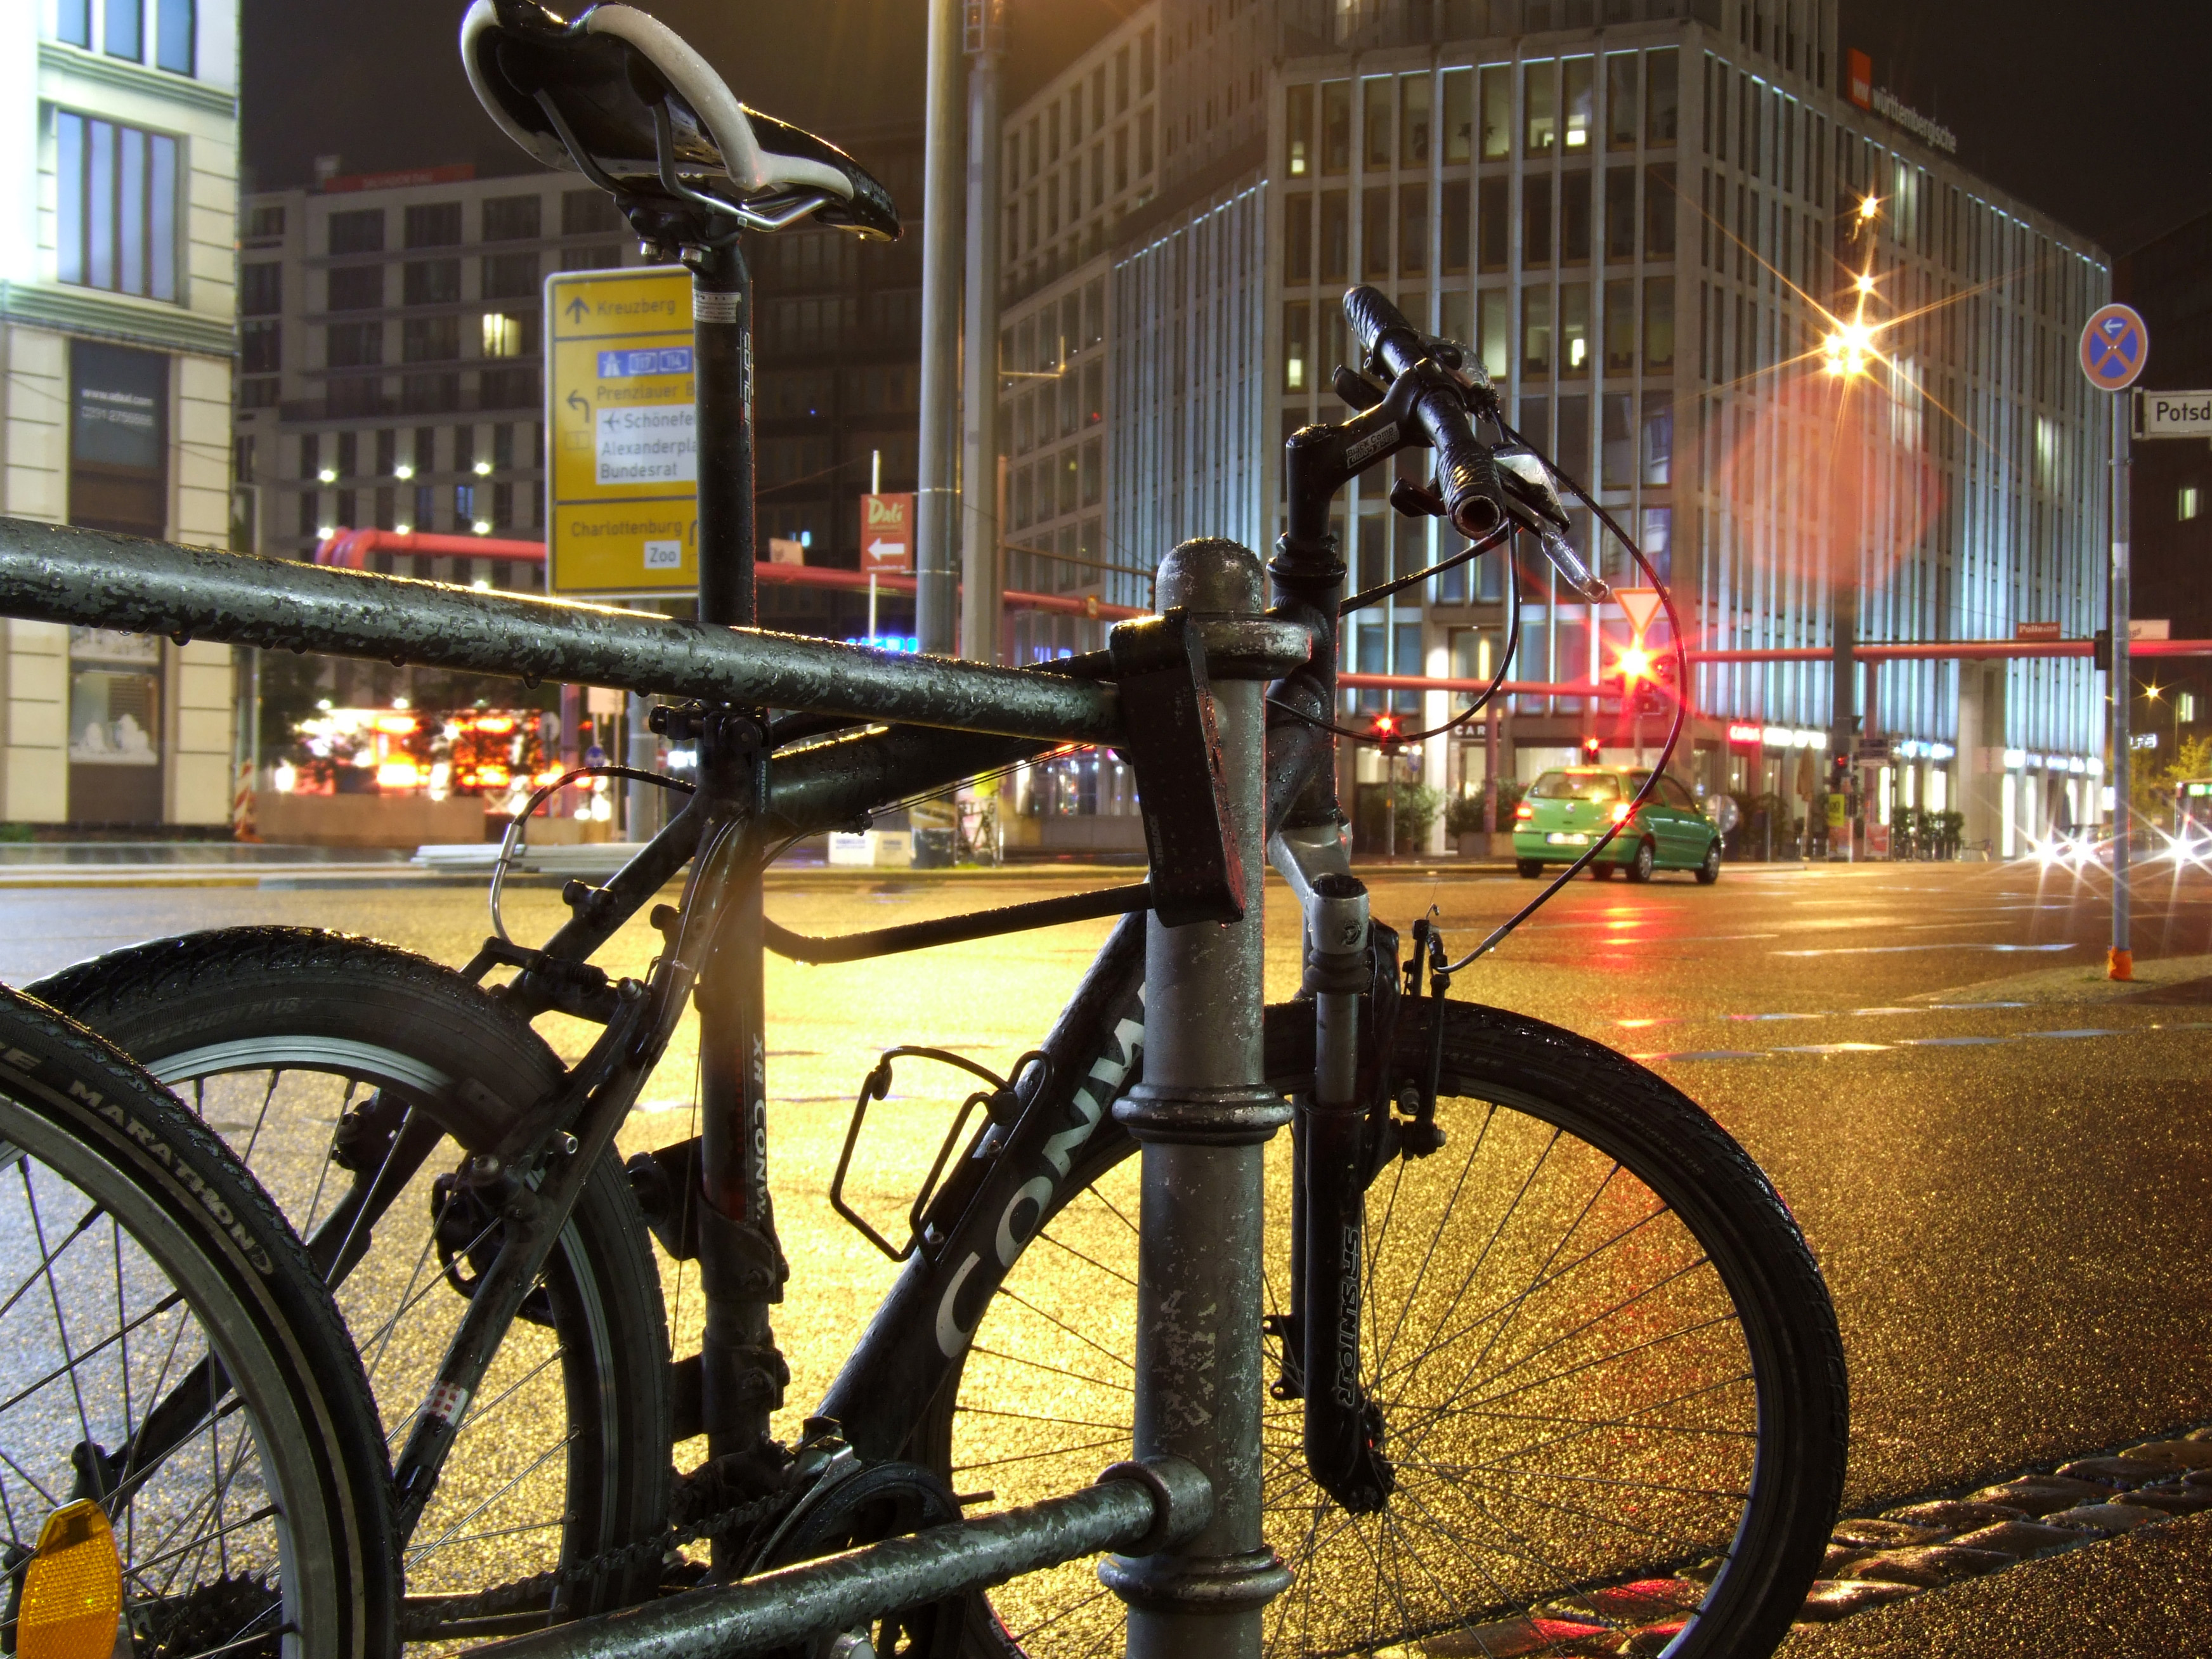 Fahrrad_by_Marvin Siefke_pixelio.de